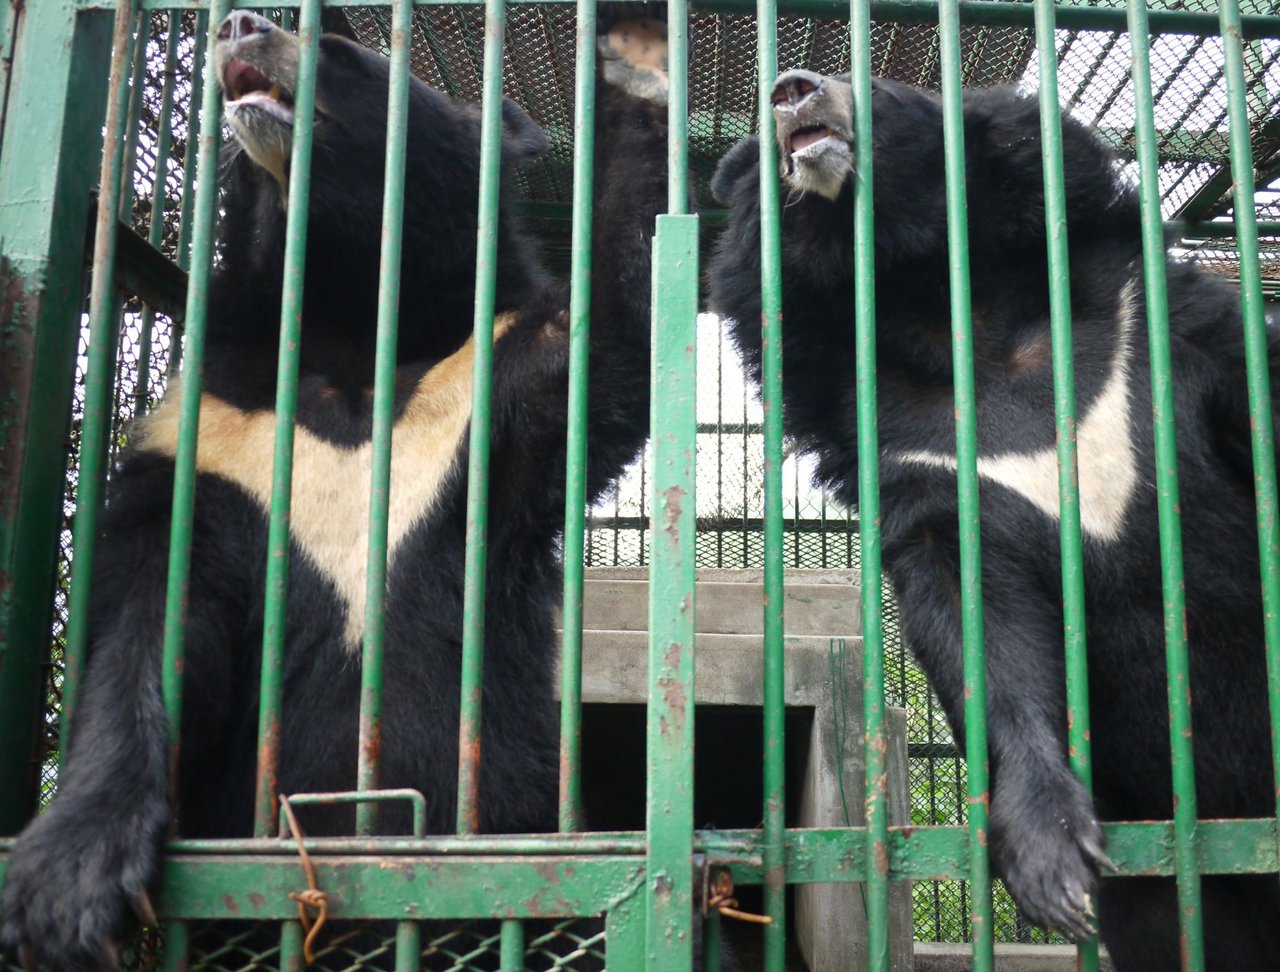 Bjørne på sydkoreansk galdefabrik